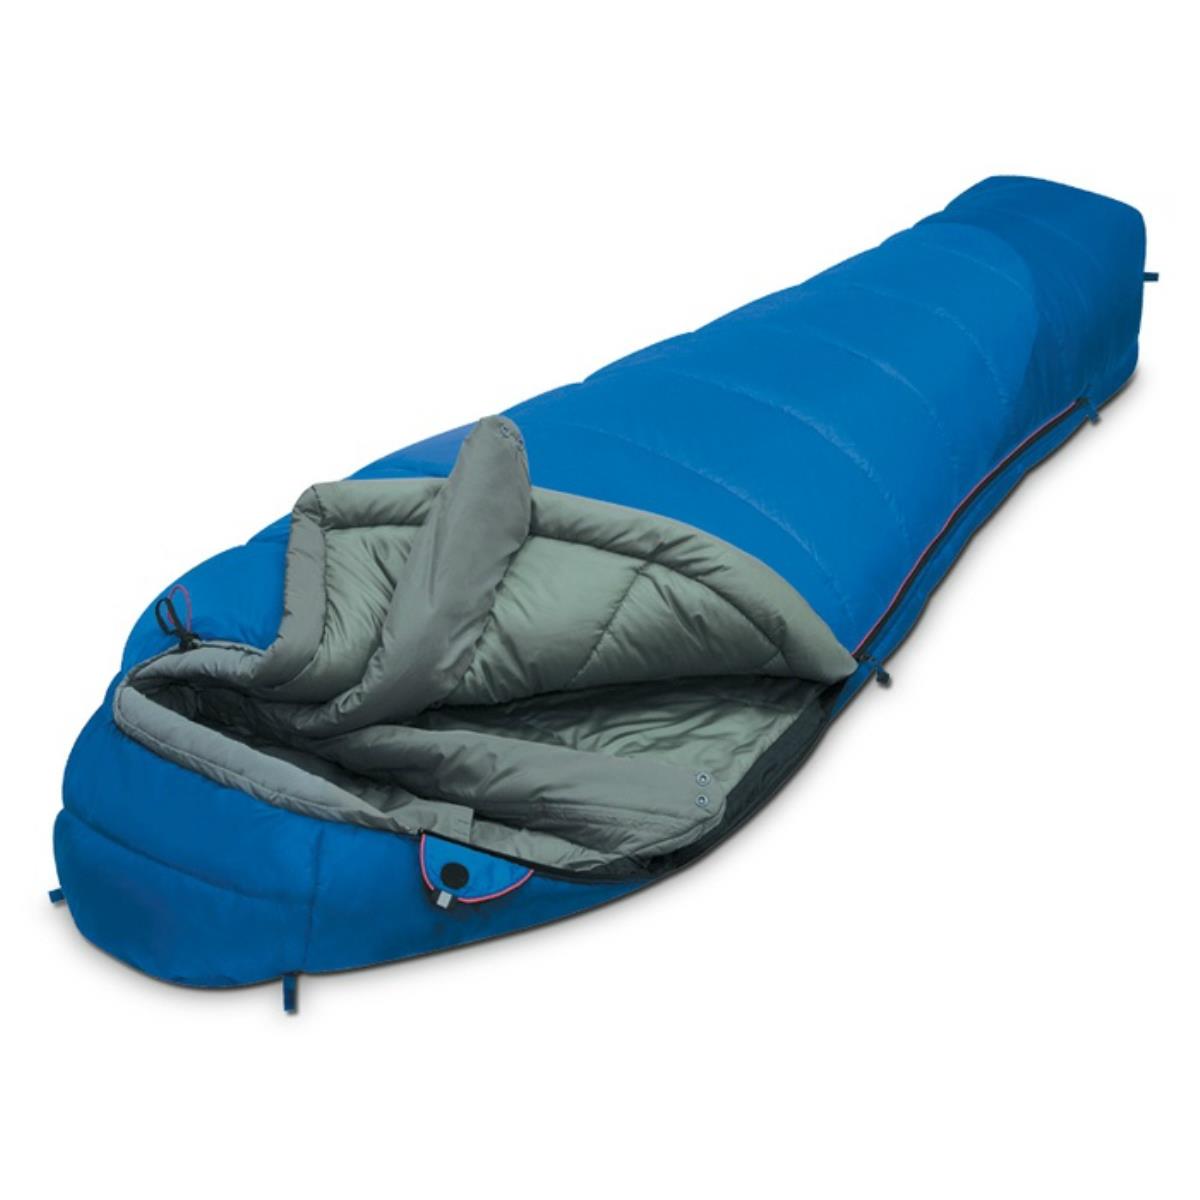 Мешок спальный MOUNTAIN Compact правый (9223.01051) ALEXIKA спальный мешок туристический 220 х 75 см до 20 градусов 700 г м2 голубой